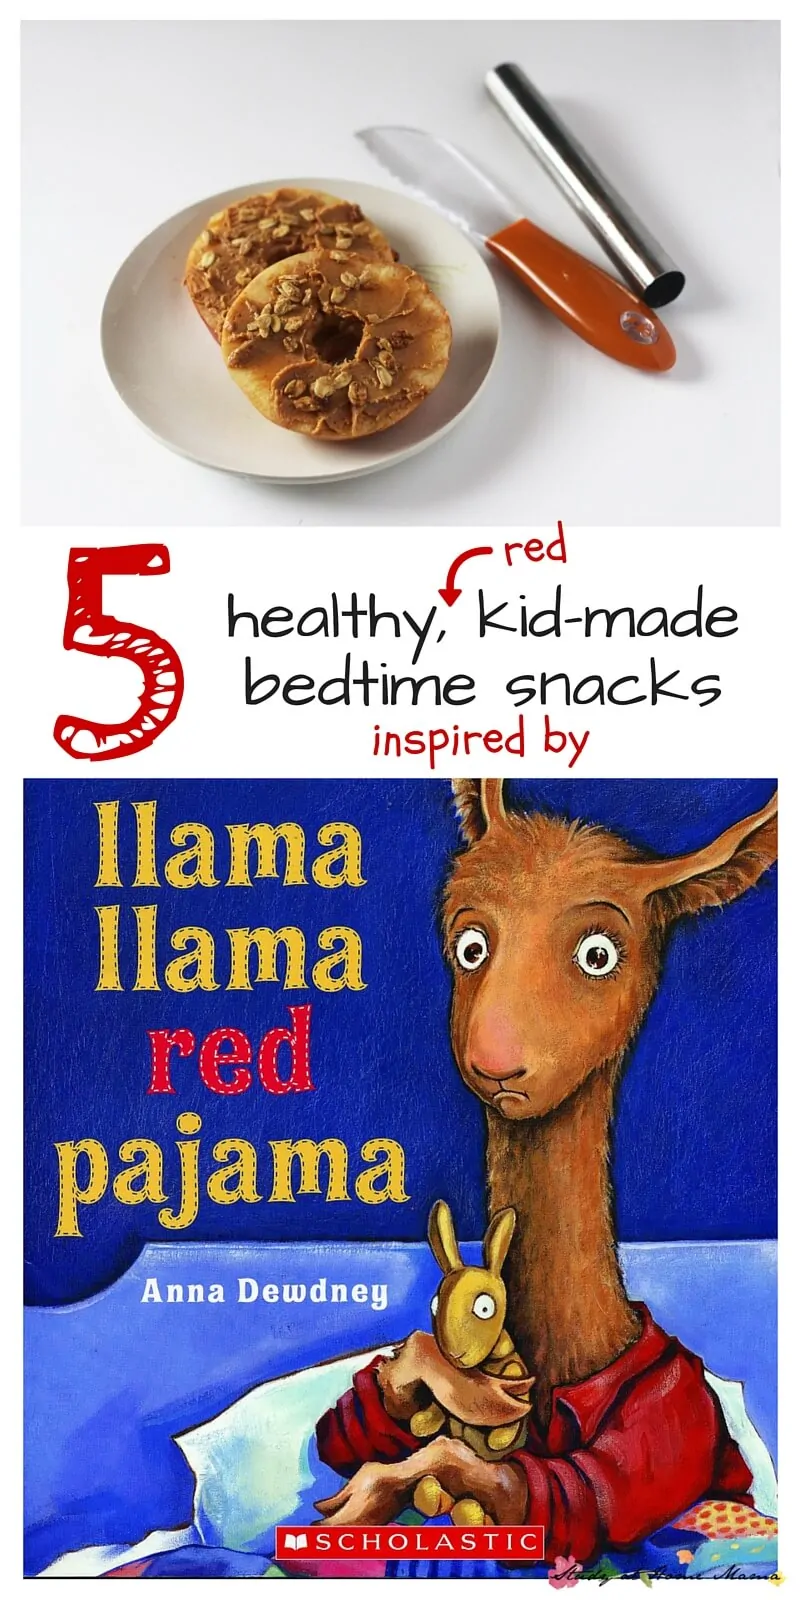 Kids’ Kitchen: 5 Bedtime Snacks